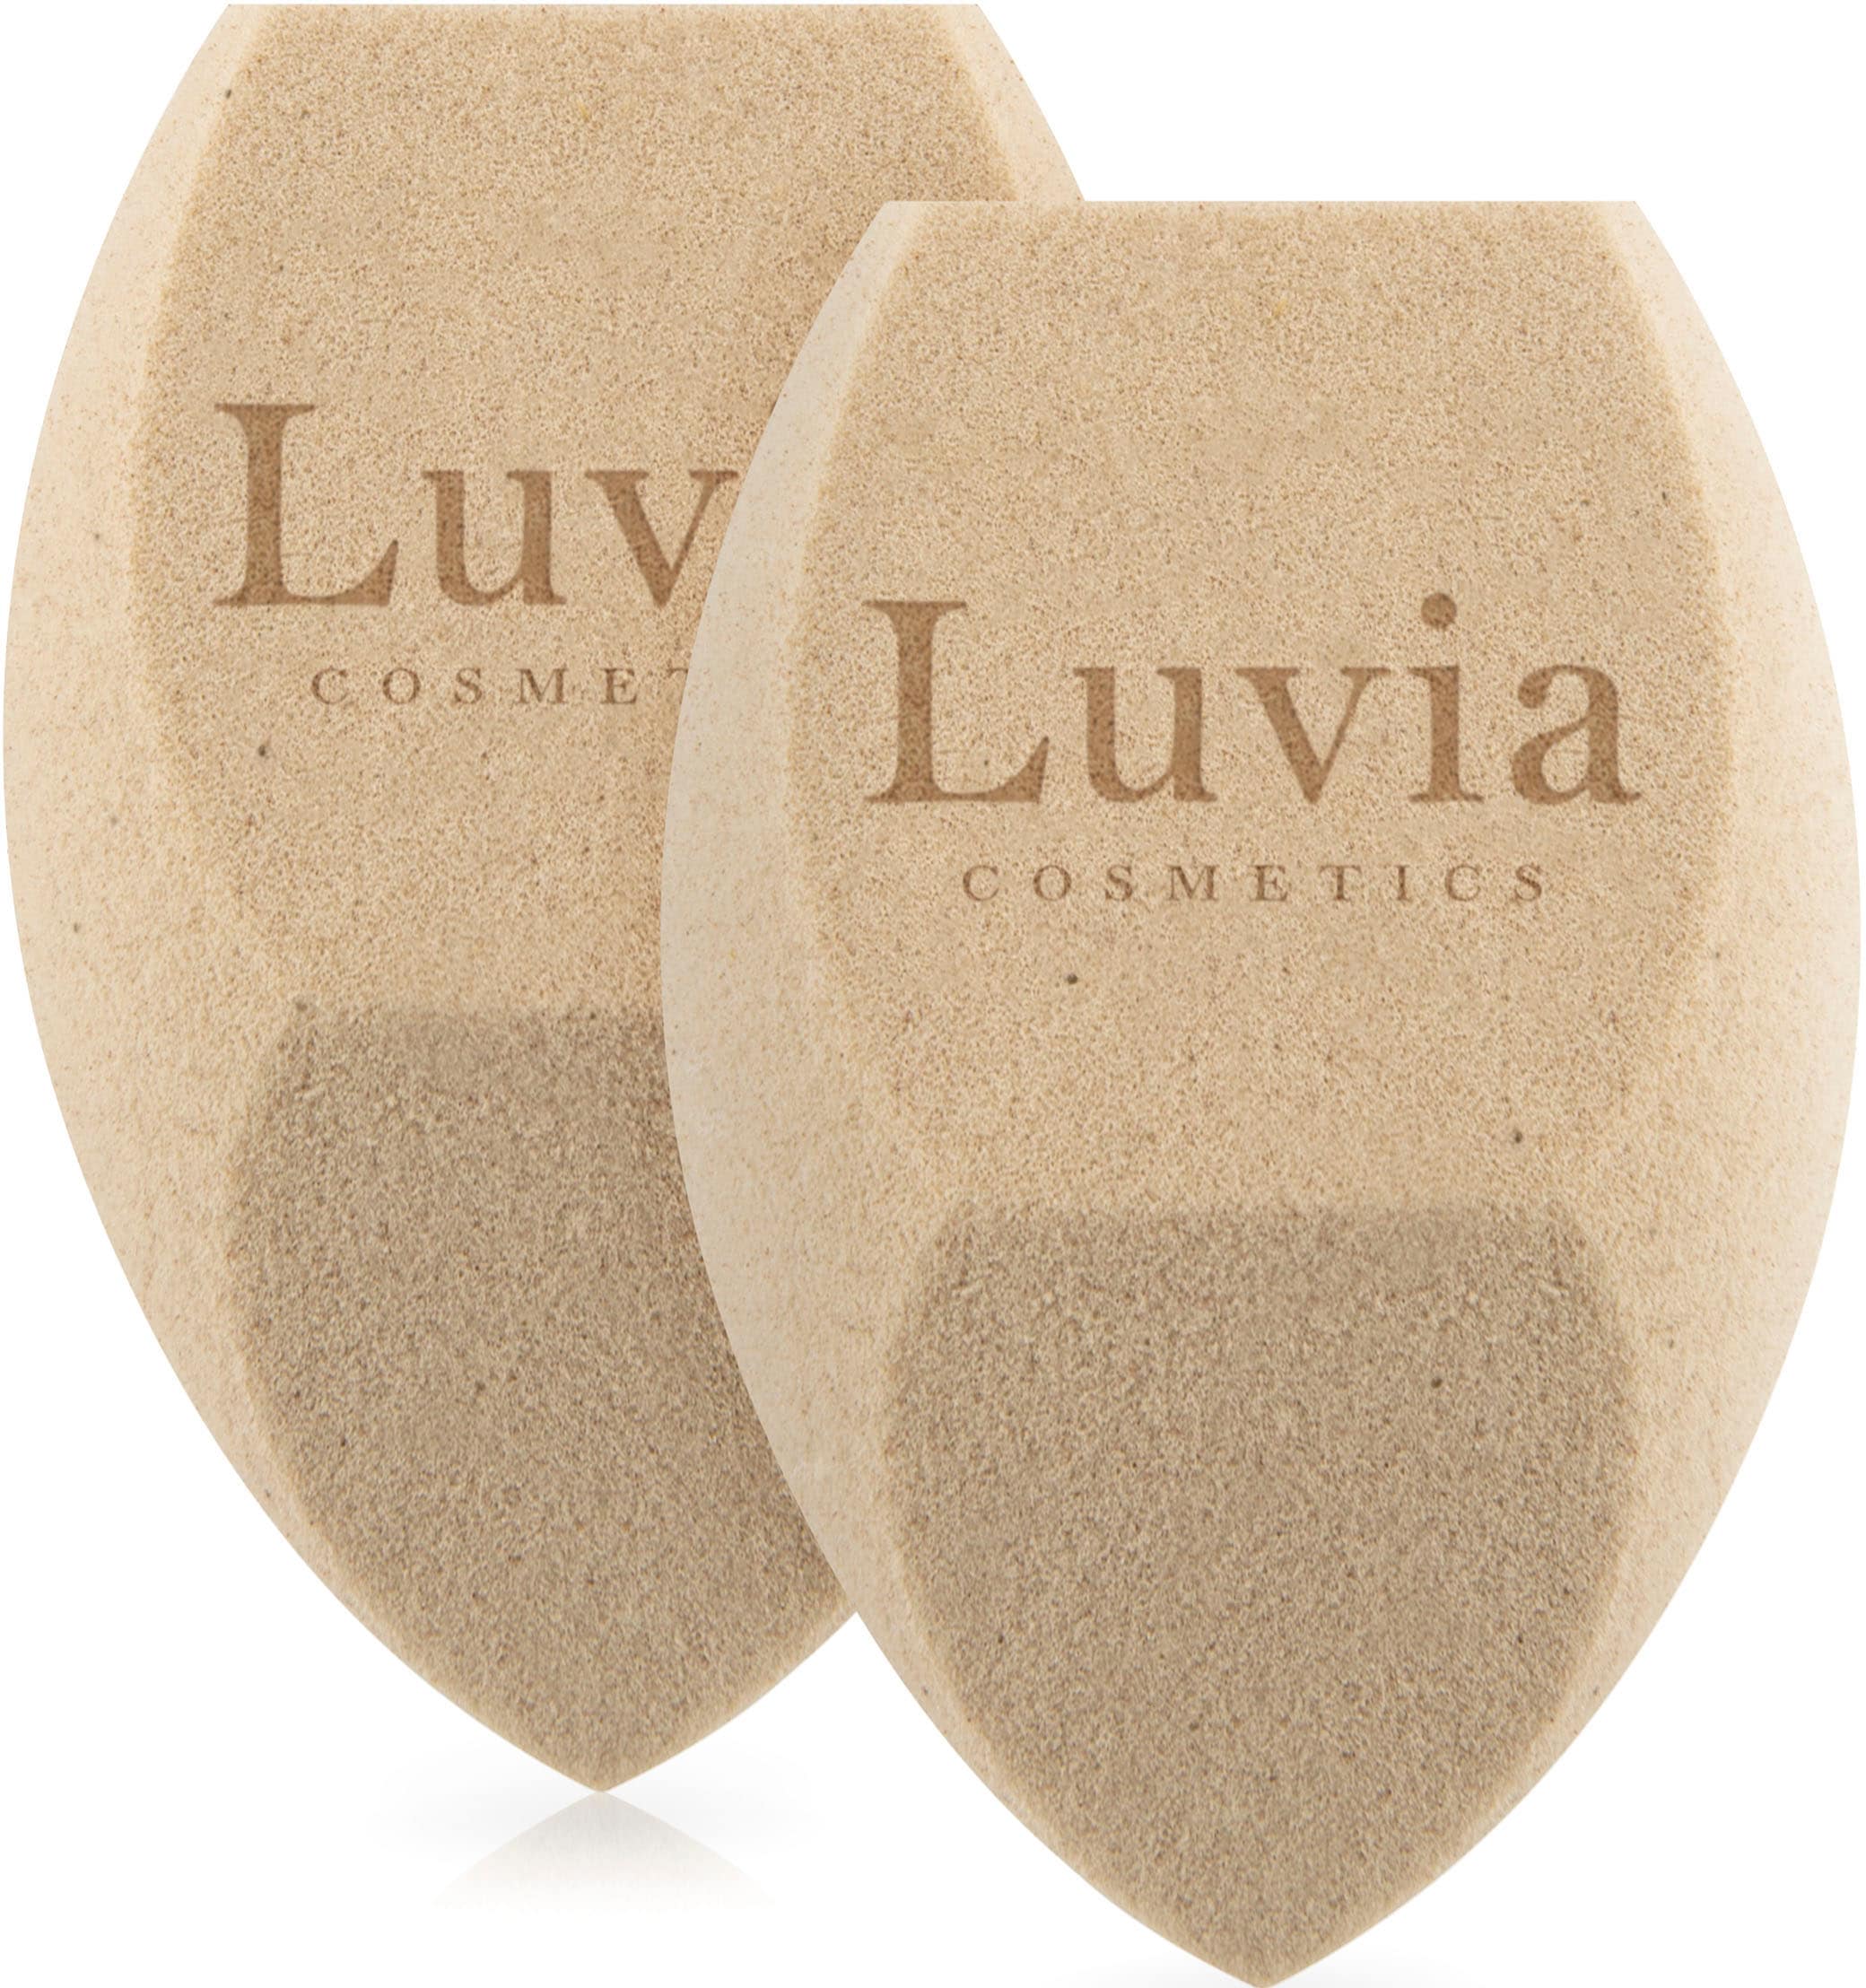 Luvia Cosmetics Make-up Schwamm »Tea Make-up Sponge Set«, (Packung, 2 tlg.,  hautfreundlicher Make-up Schwamm mit wertvollen Tee-Bestandteilen),  Feinporig für natürliches Hautbild, geringer Verbrauch mit Tee-Extrakt  online kaufen | BAUR